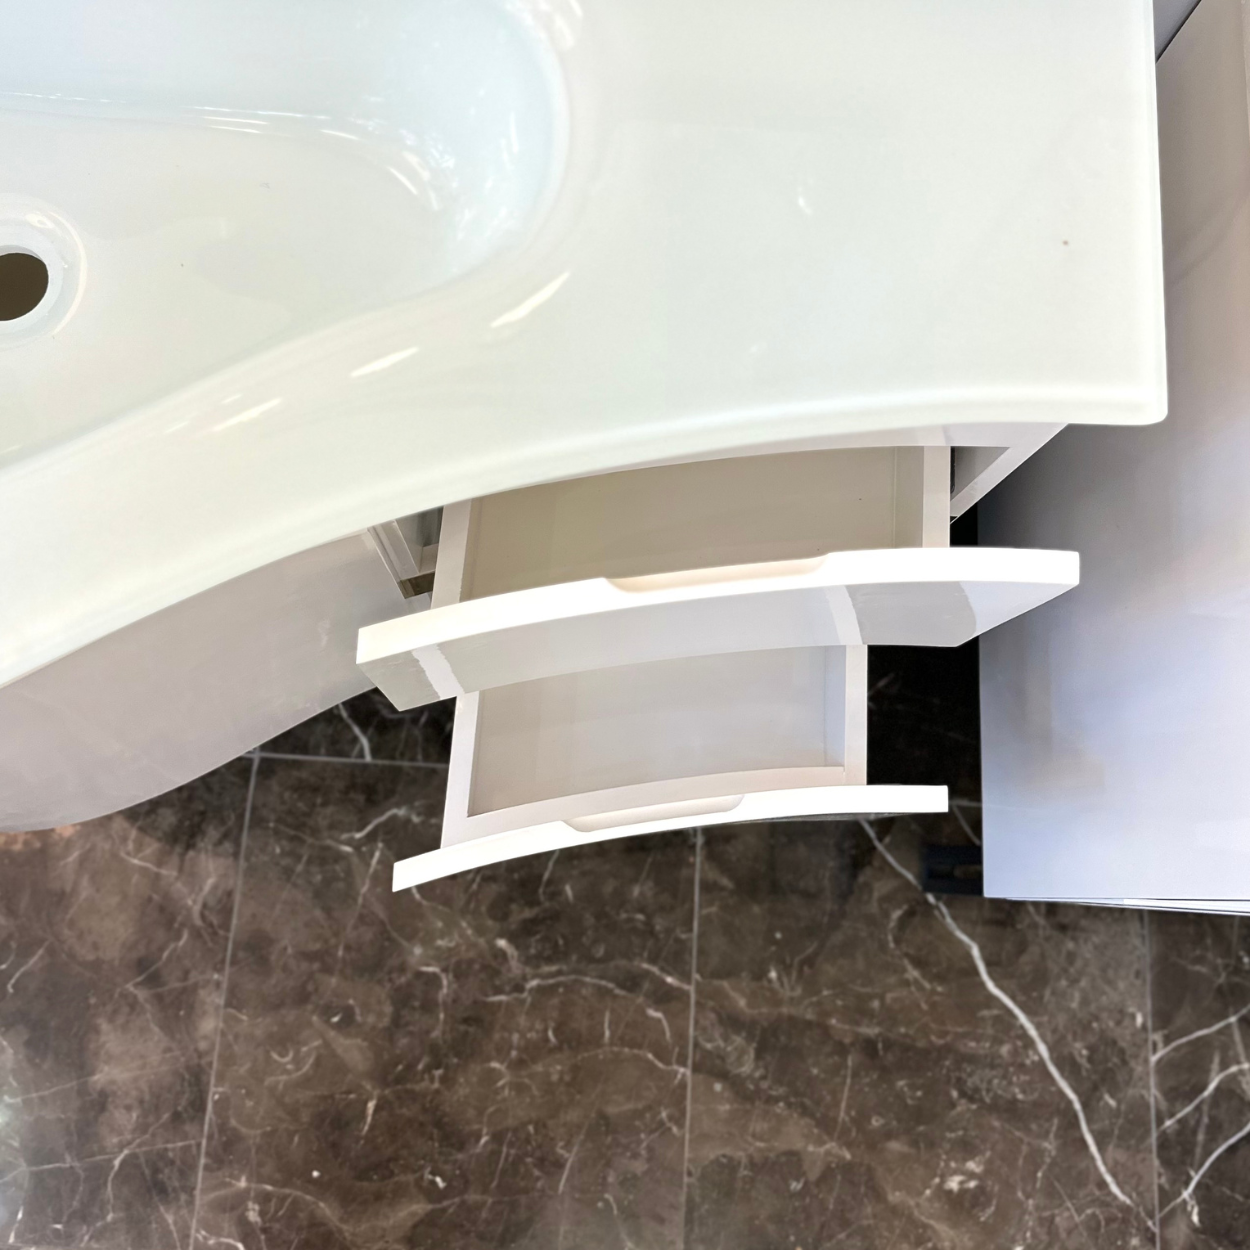 36'' Santorini white with gold bathroom vanity